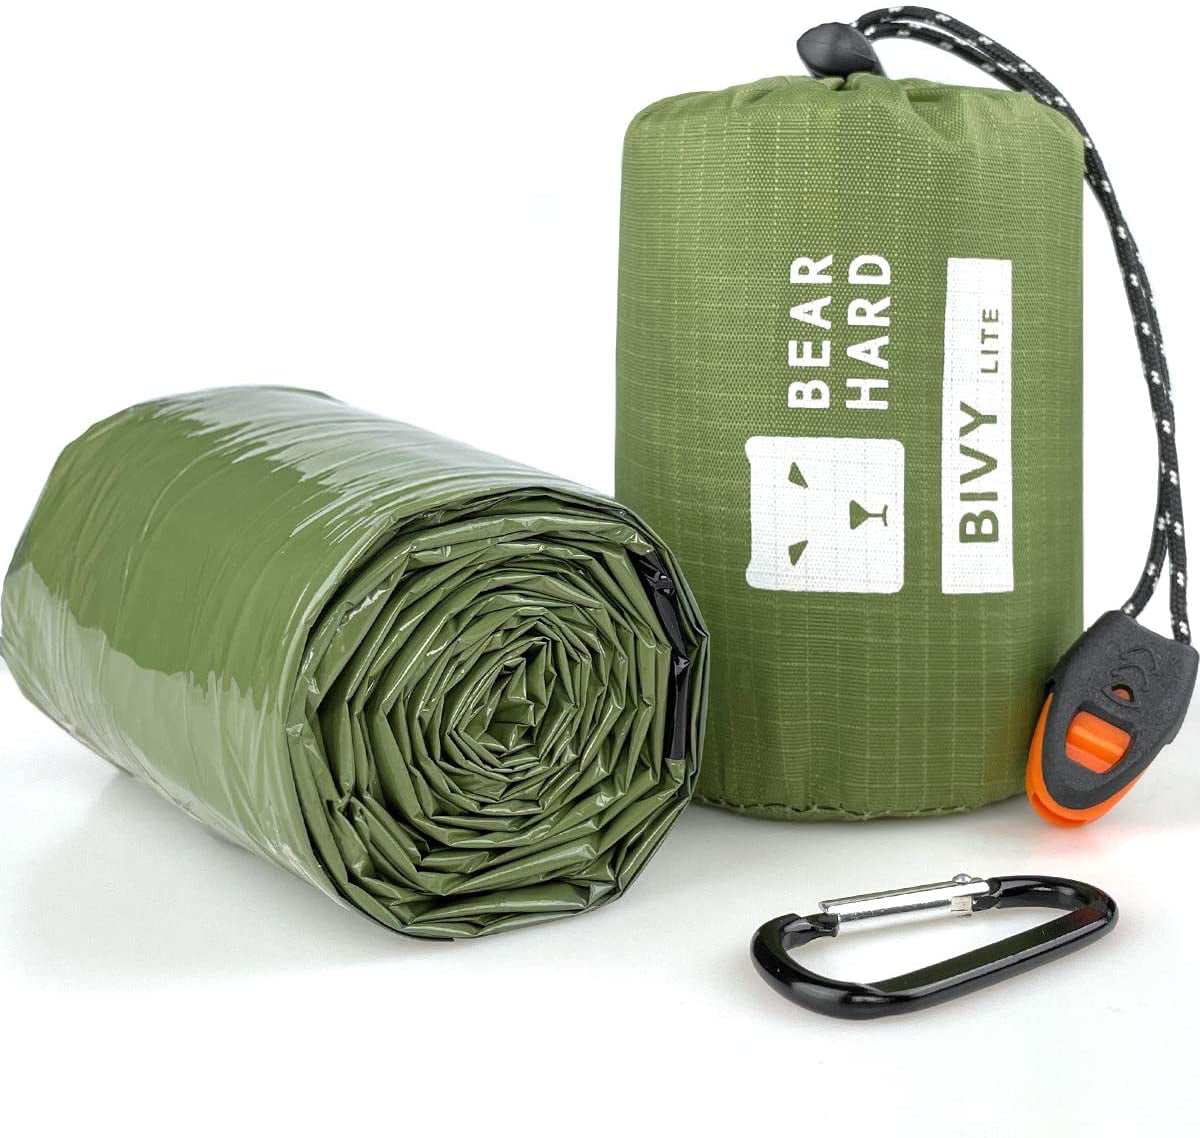 Bearhard Bivy Sack Waterproof Emergency Sleeping Bag Lightweight Emergency Shelter Thermal Survival Space Blanket for Camping，Hiking